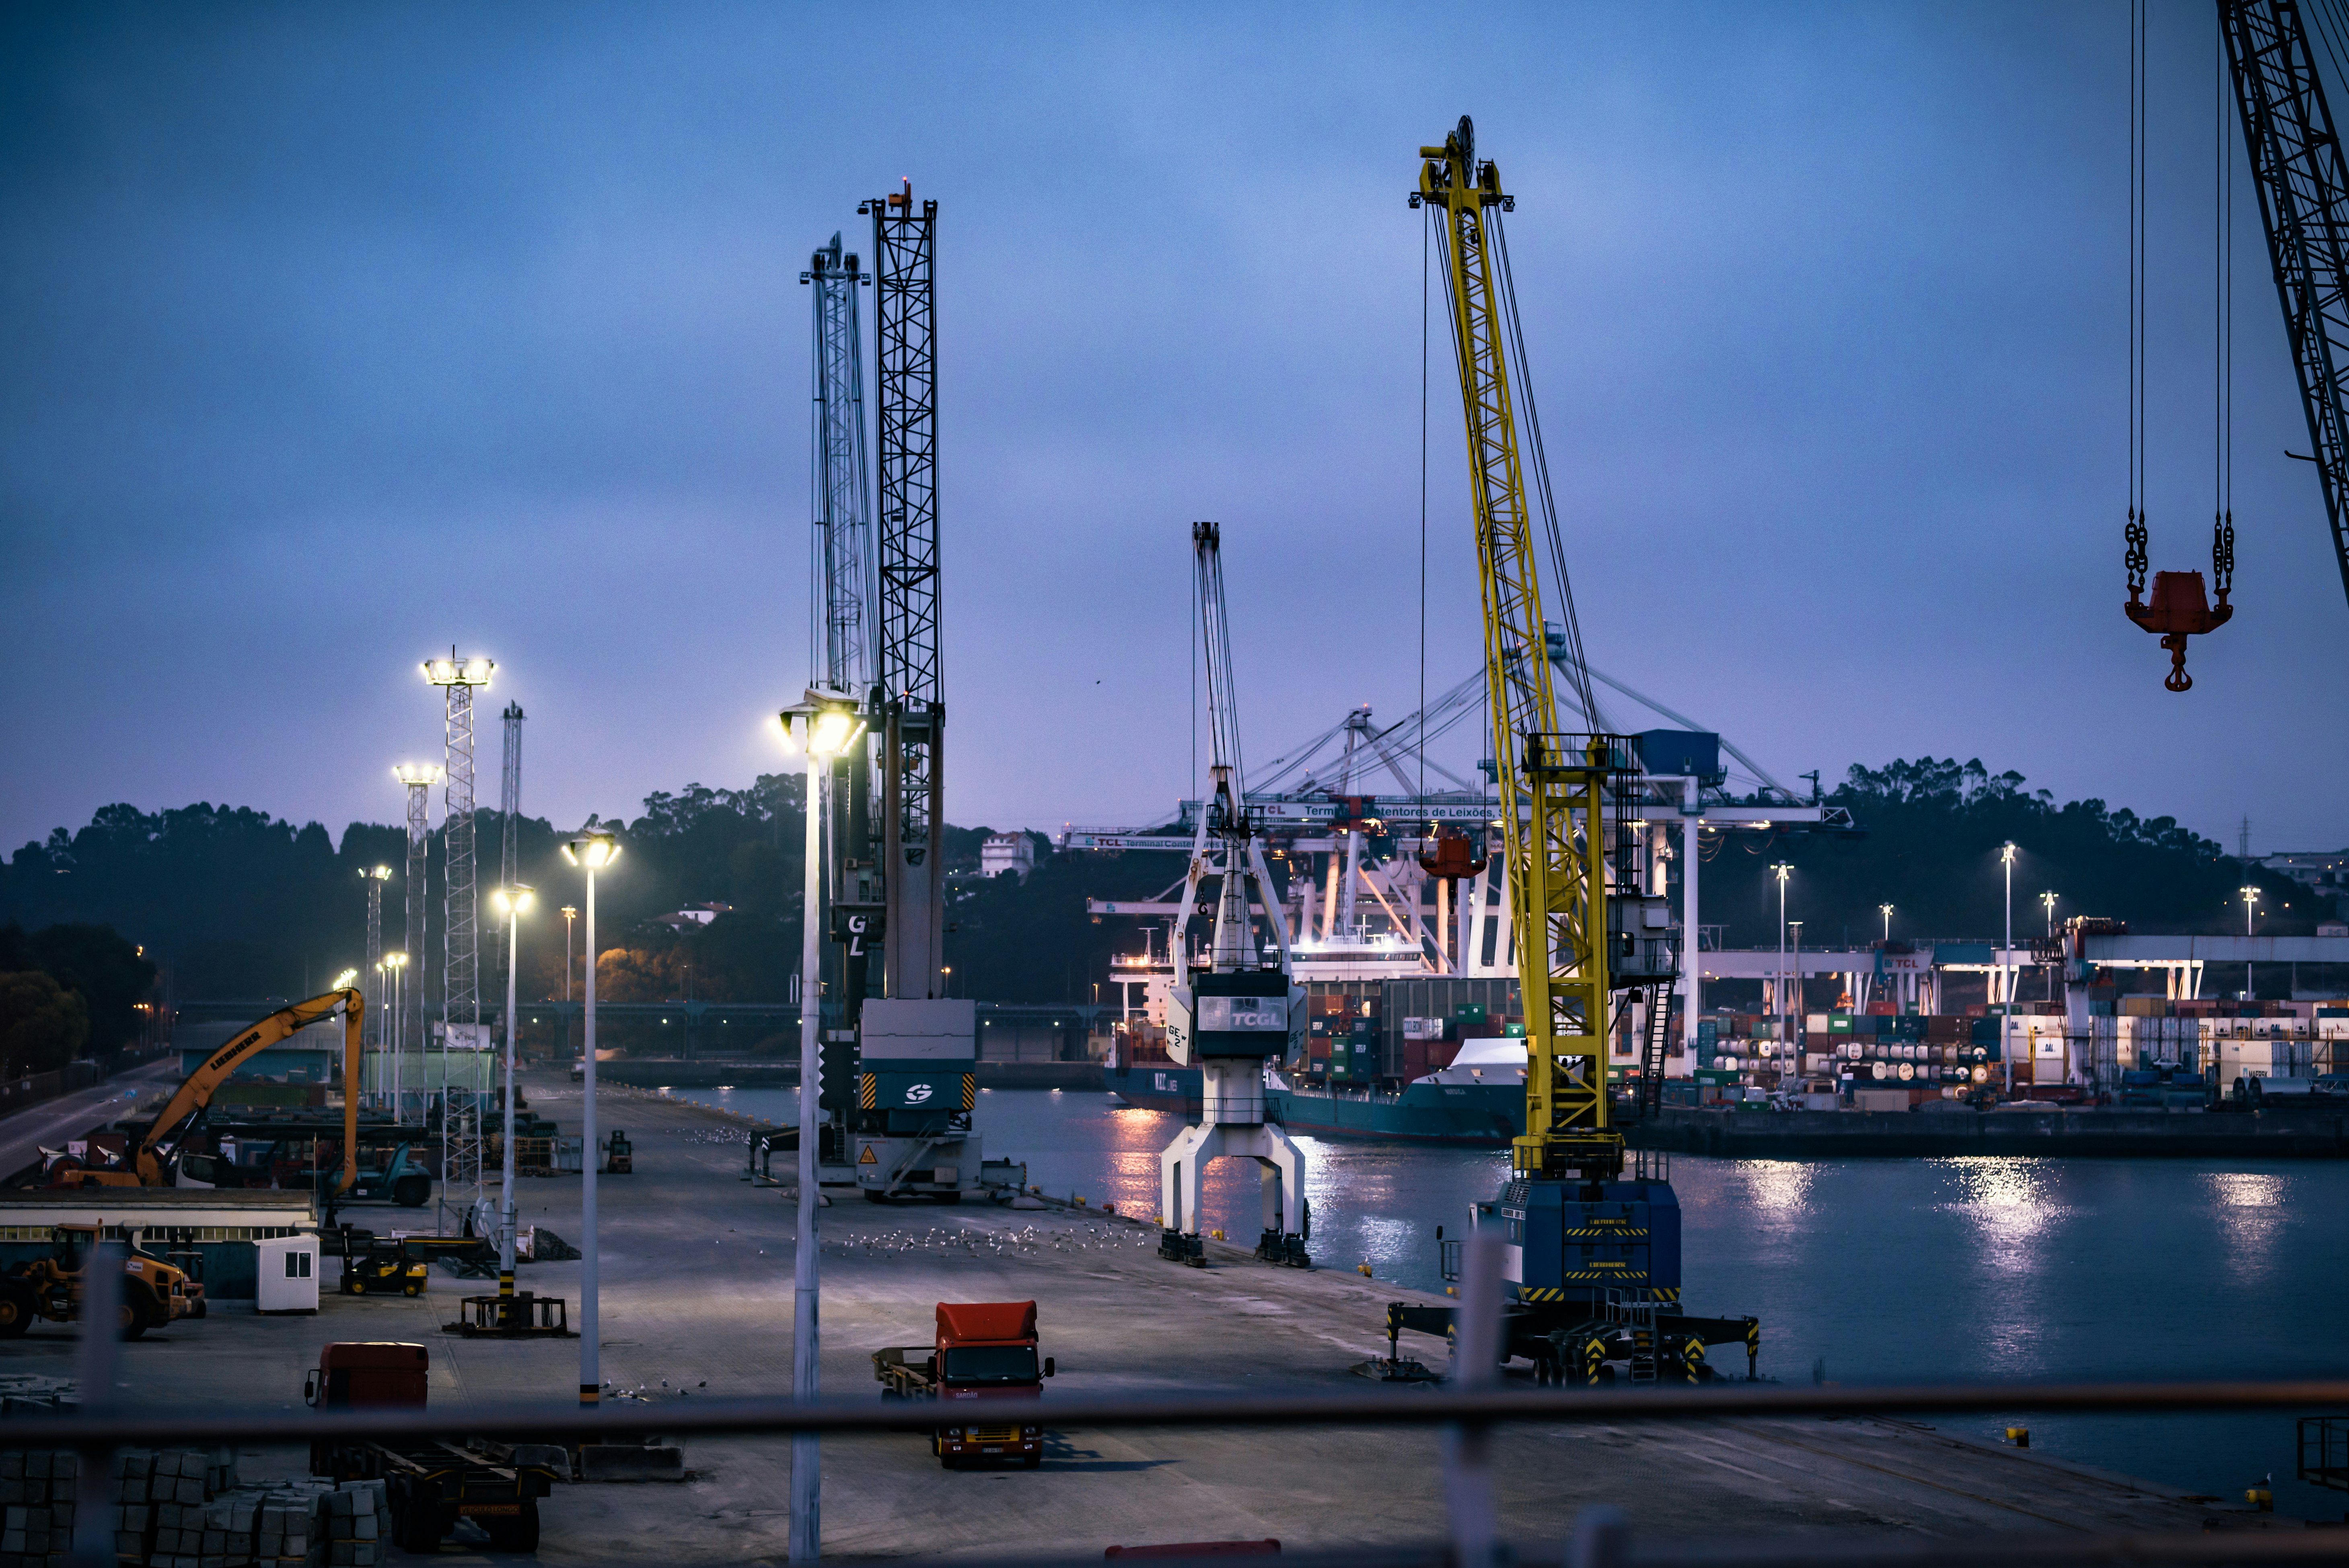 The sea trade port in Matosinhos, Porto.